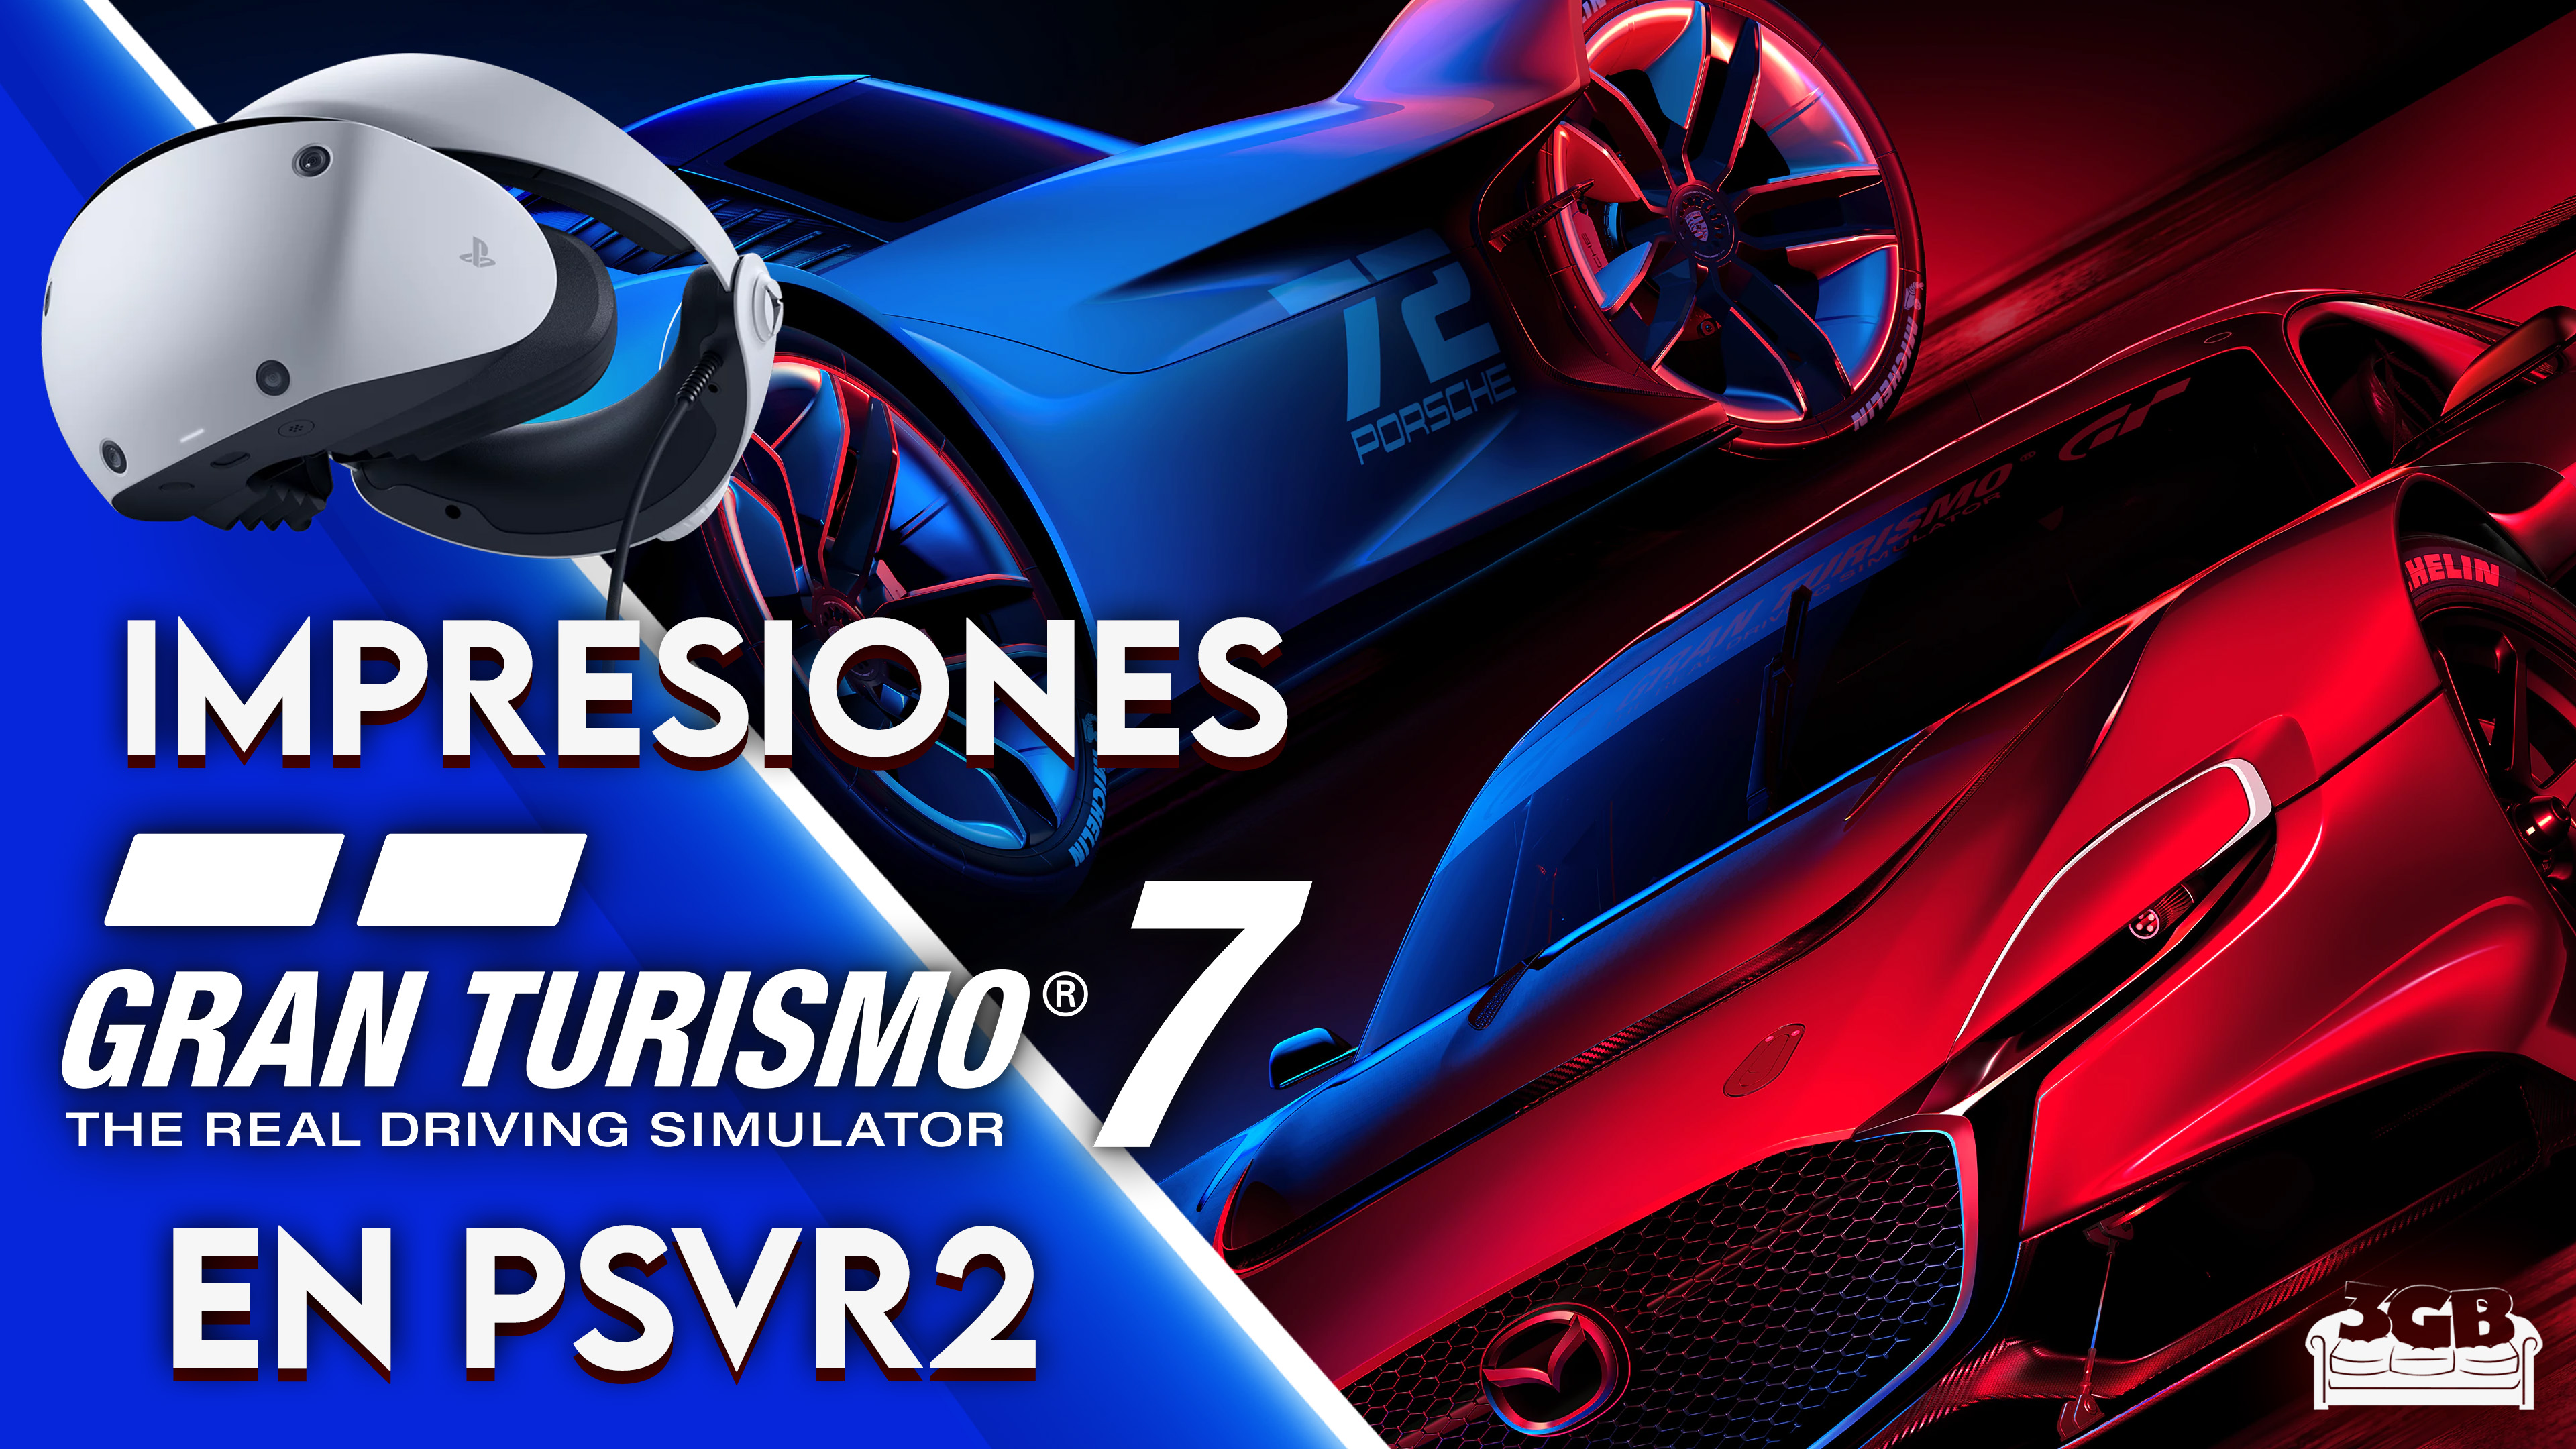 Impresiones Gran Turismo 7 en PSVR2 – Una Verdadera Killer App